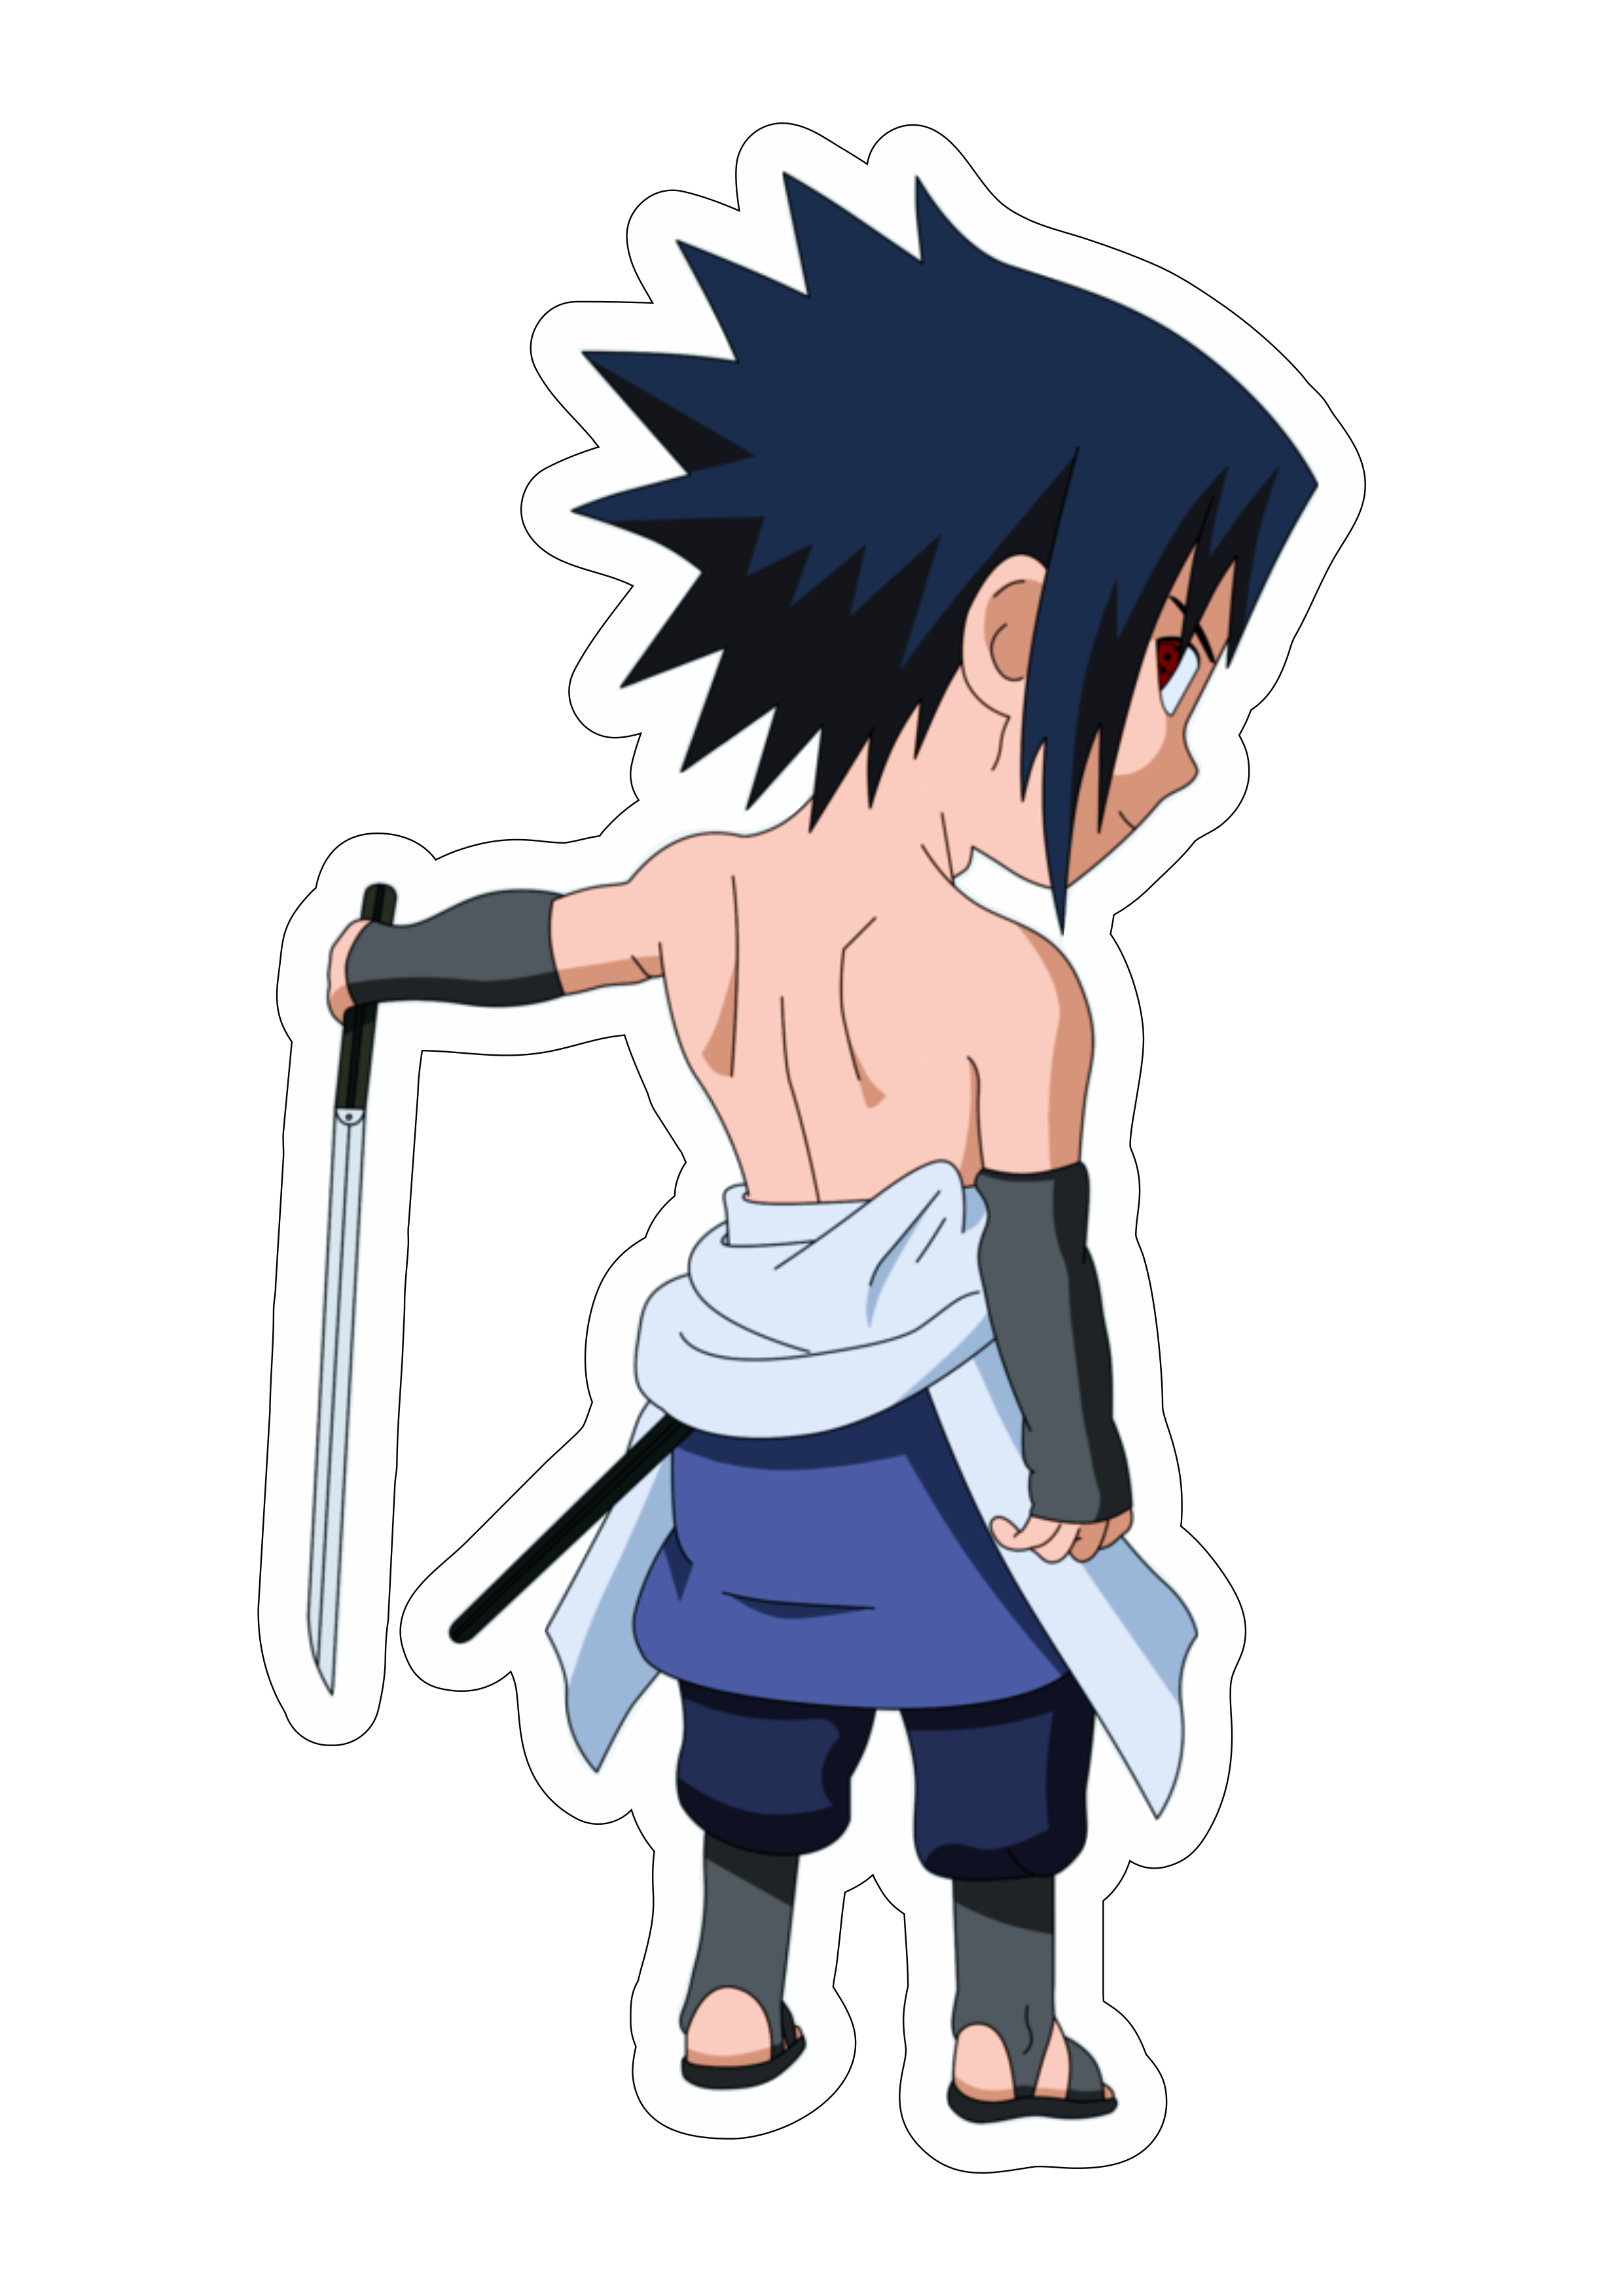 Naruto clássico cute chibi Sasuke skin Rock Lee com espada Sharingam ninja  vila oculta da folha desenho infantil anime ilustração png